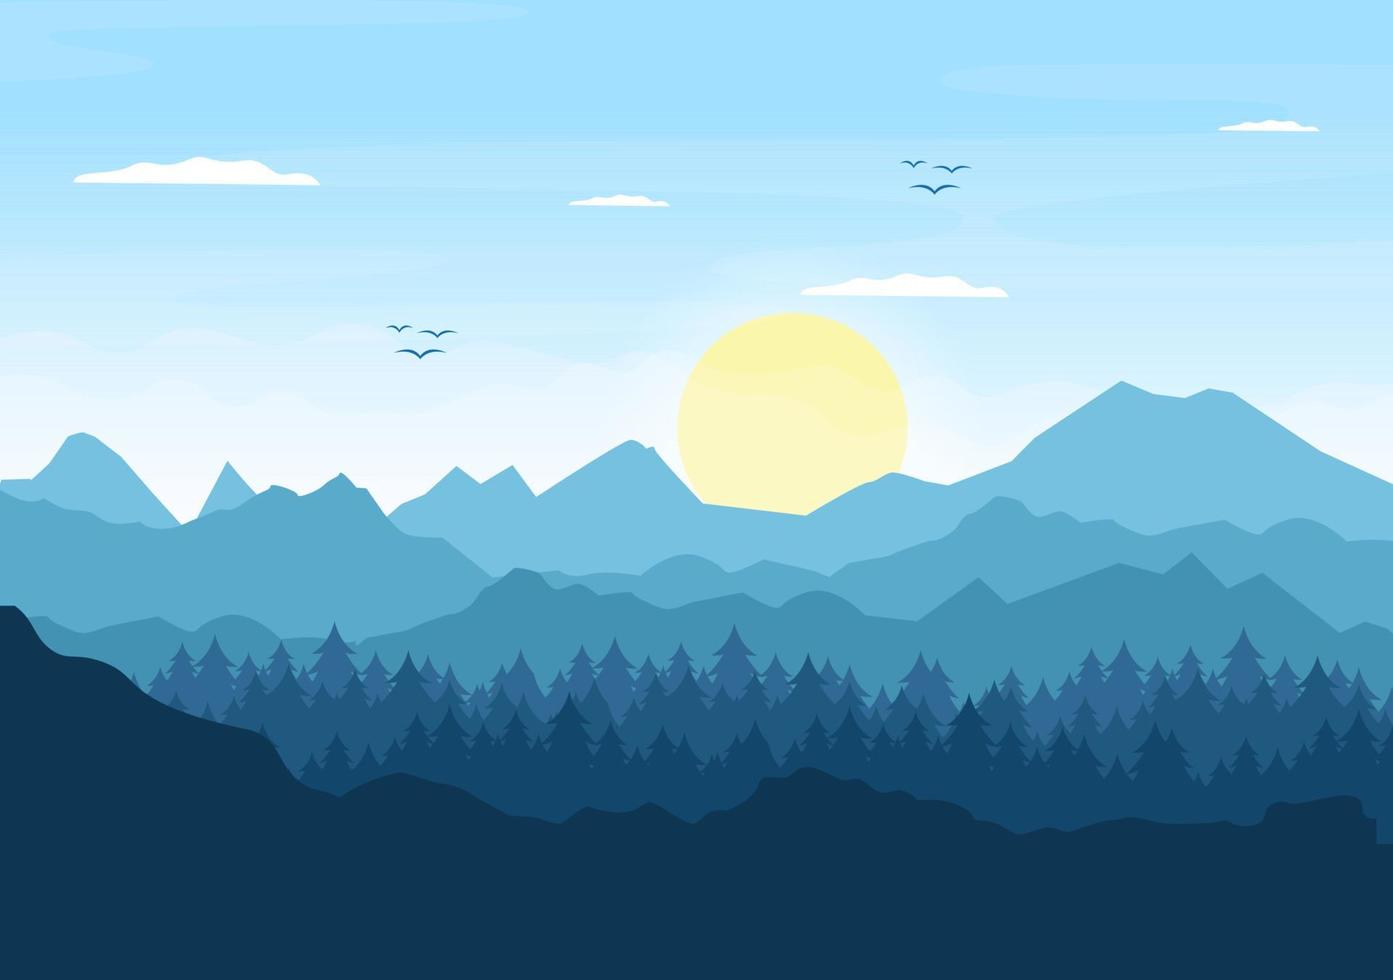 soluppgångslandskap av morgonscenberg, kulle, sjö och dal i platt natur för affisch, banderoll eller bakgrundsillustration vektor